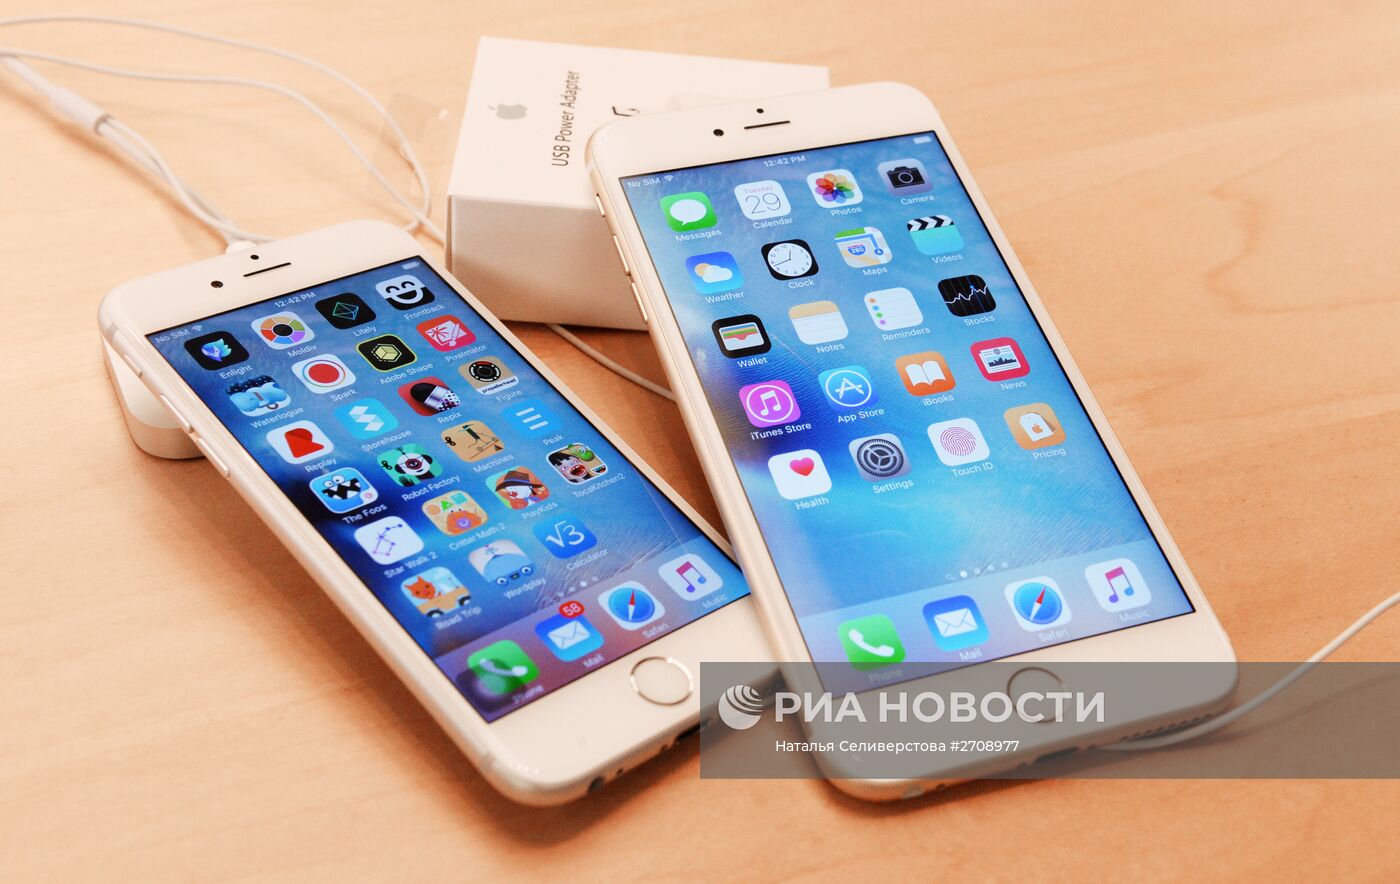 Продажа смартфонов iPhone 6s и iPhone 6s Plus